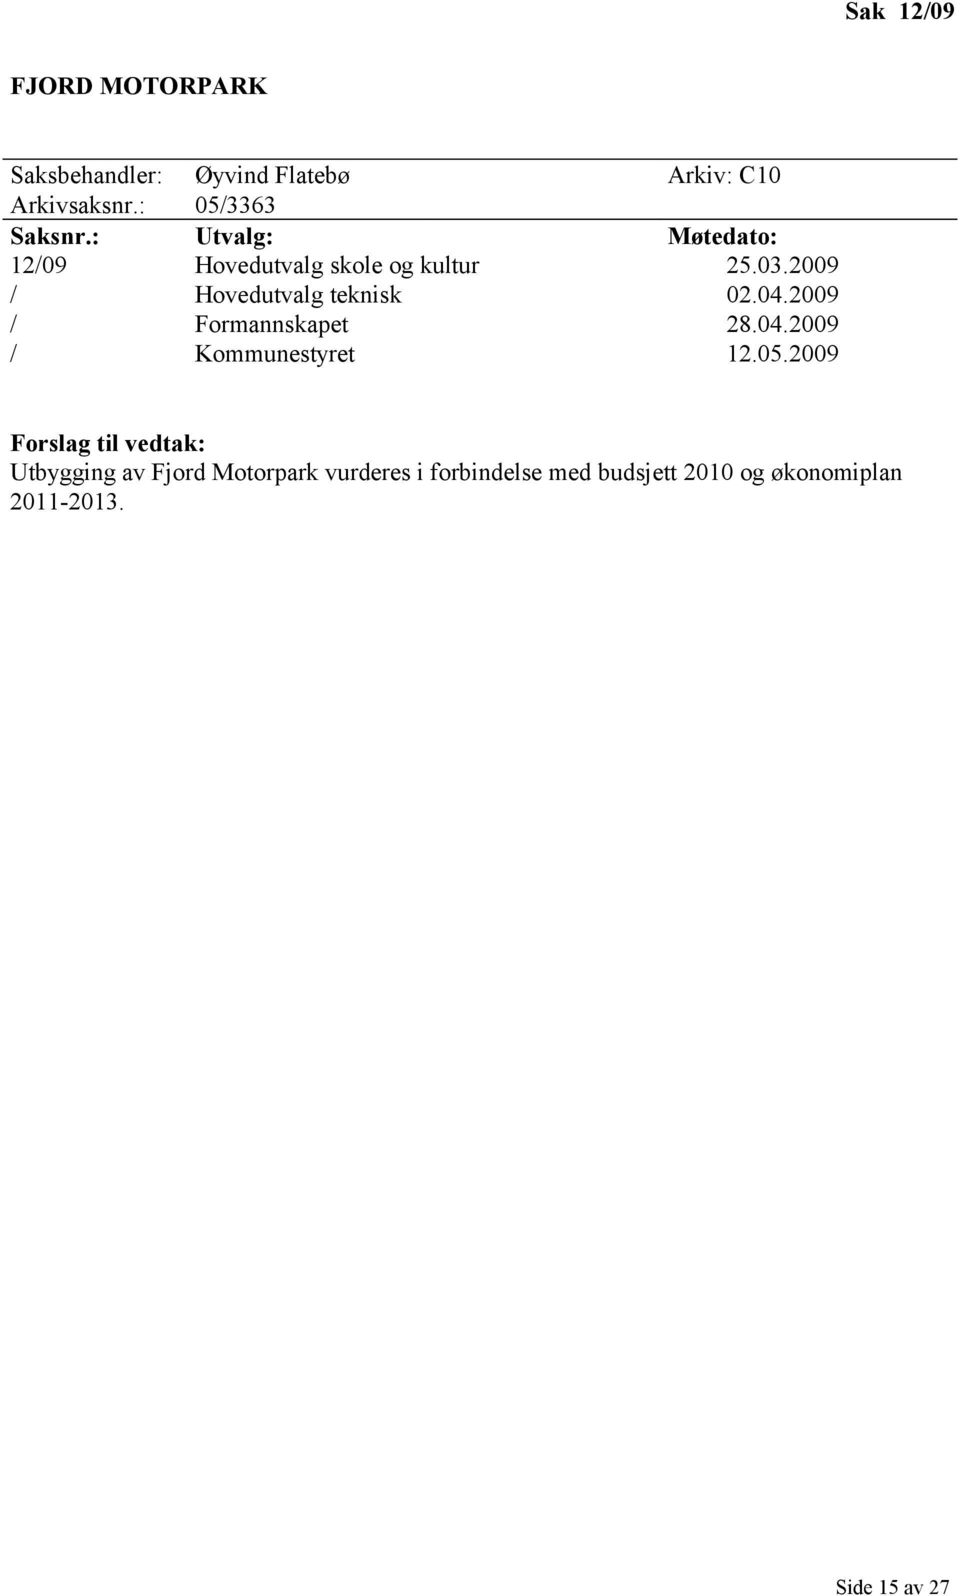 2009 / Hovedutvalg teknisk 02.04.2009 / Formannskapet 28.04.2009 / Kommunestyret 12.05.